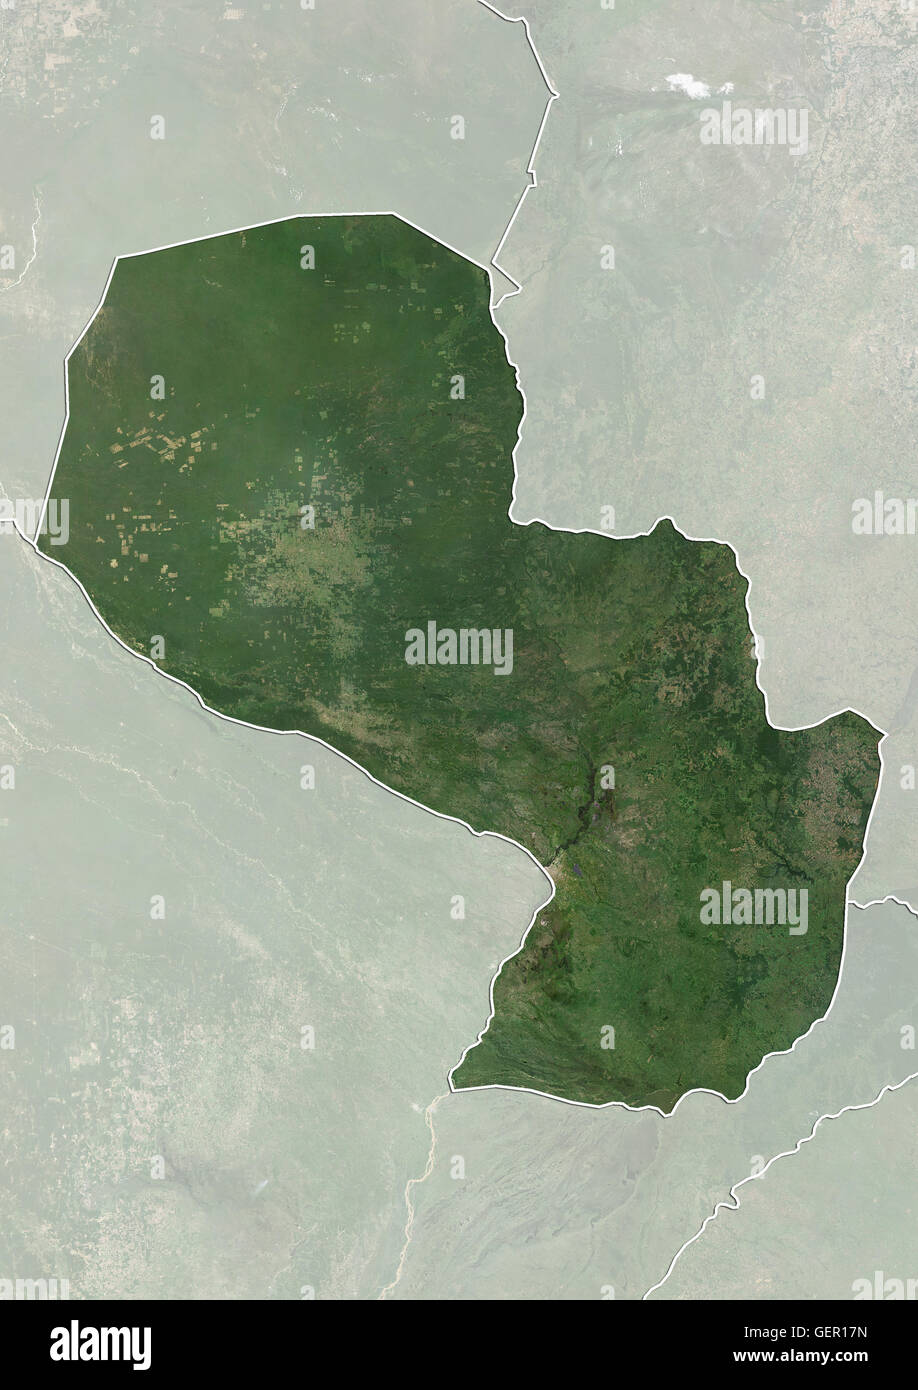 Satellitenansicht von Paraguay (mit Ländergrenzen und Maske). Dieses Bild wurde aus Daten von Landsat-Satelliten erworben erstellt. Stockfoto